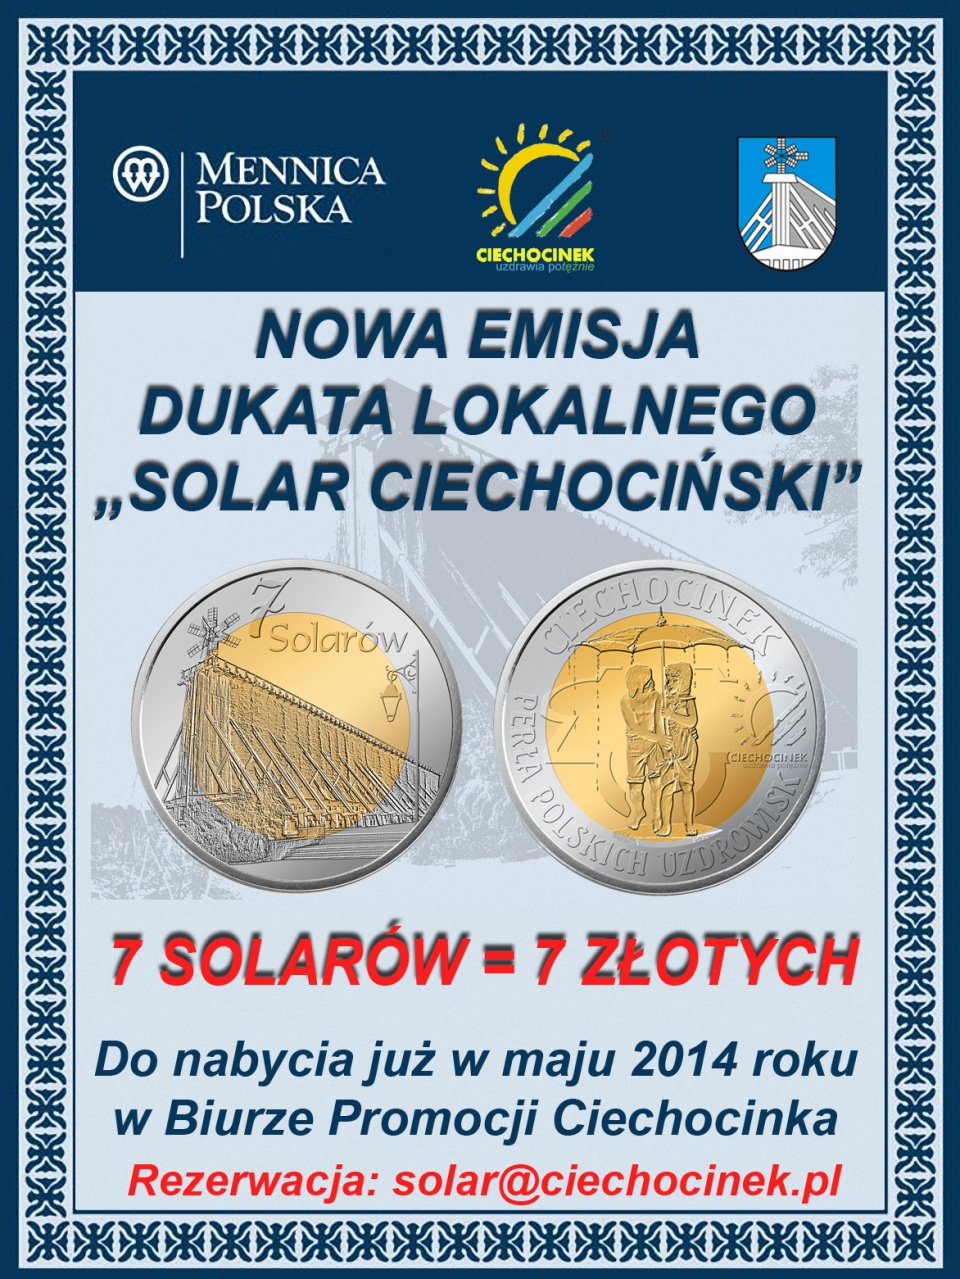 Kolekcjonerska moneta popularyzować będzie najsłynniejsze atrakcje Ciechocinka. Fot. ciechocinek.pl